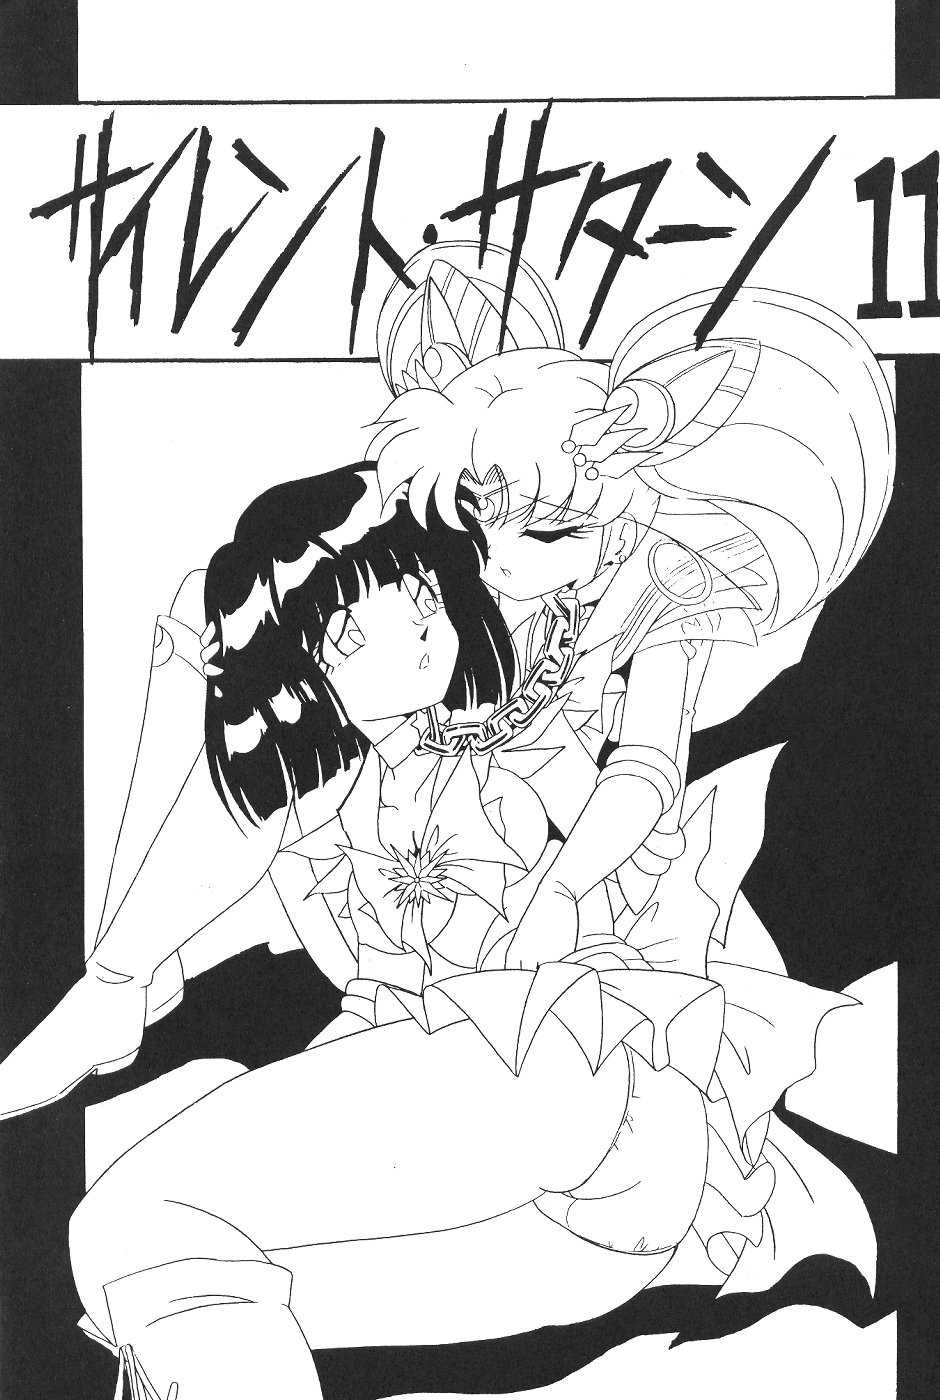 Saateiseibaazutoriito 2D Shooting - Silent Saturn 11 (Sailor Moon) 